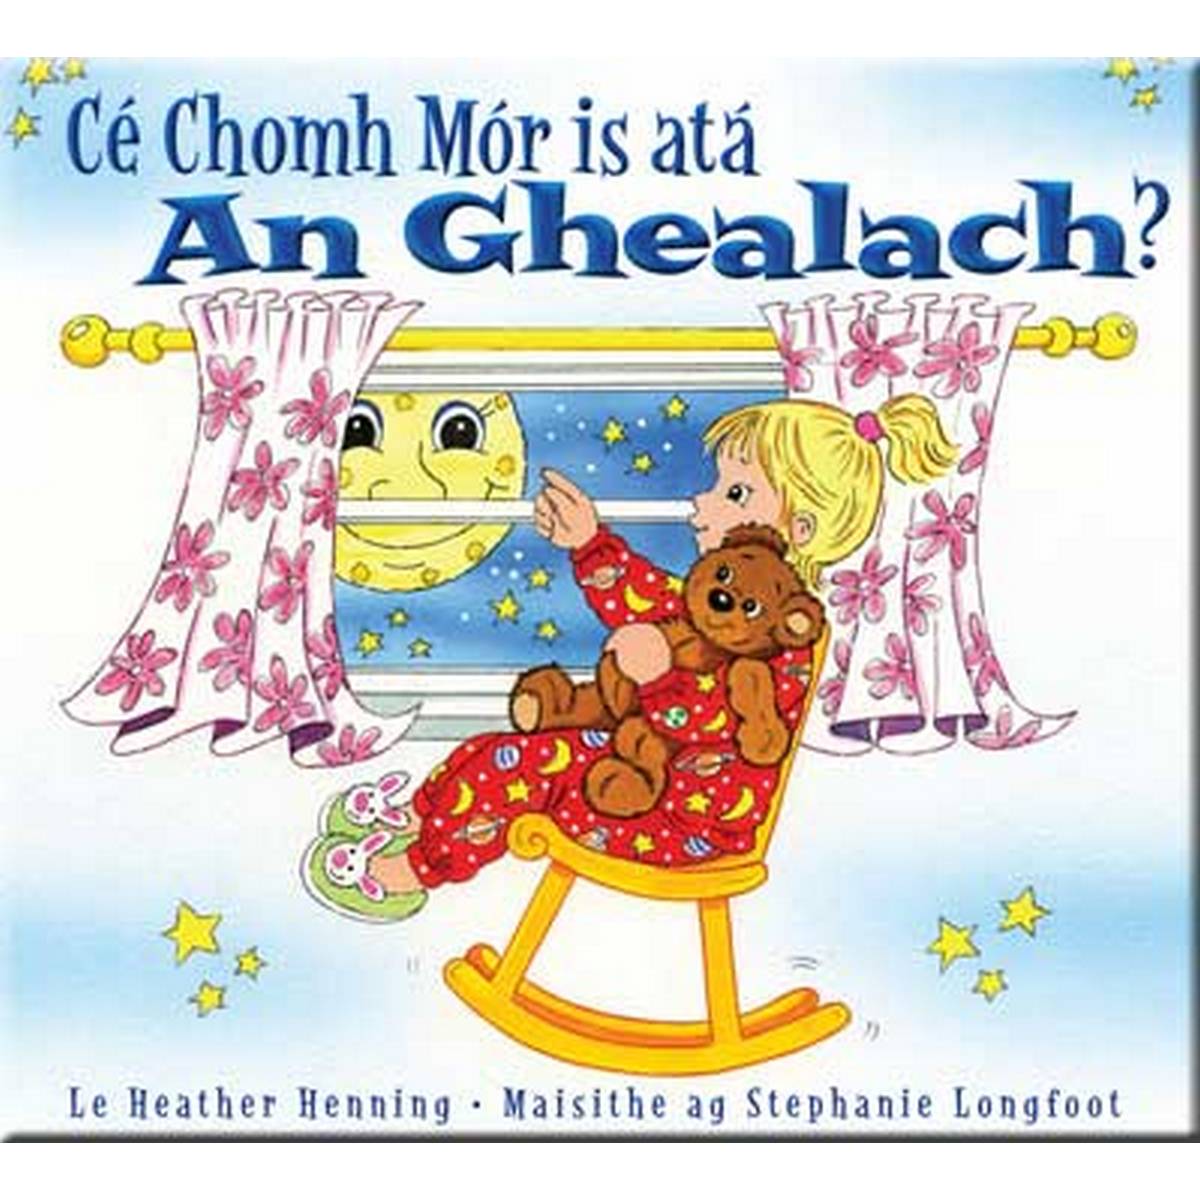 Cé Chomh Mór is atá an Ghealach?